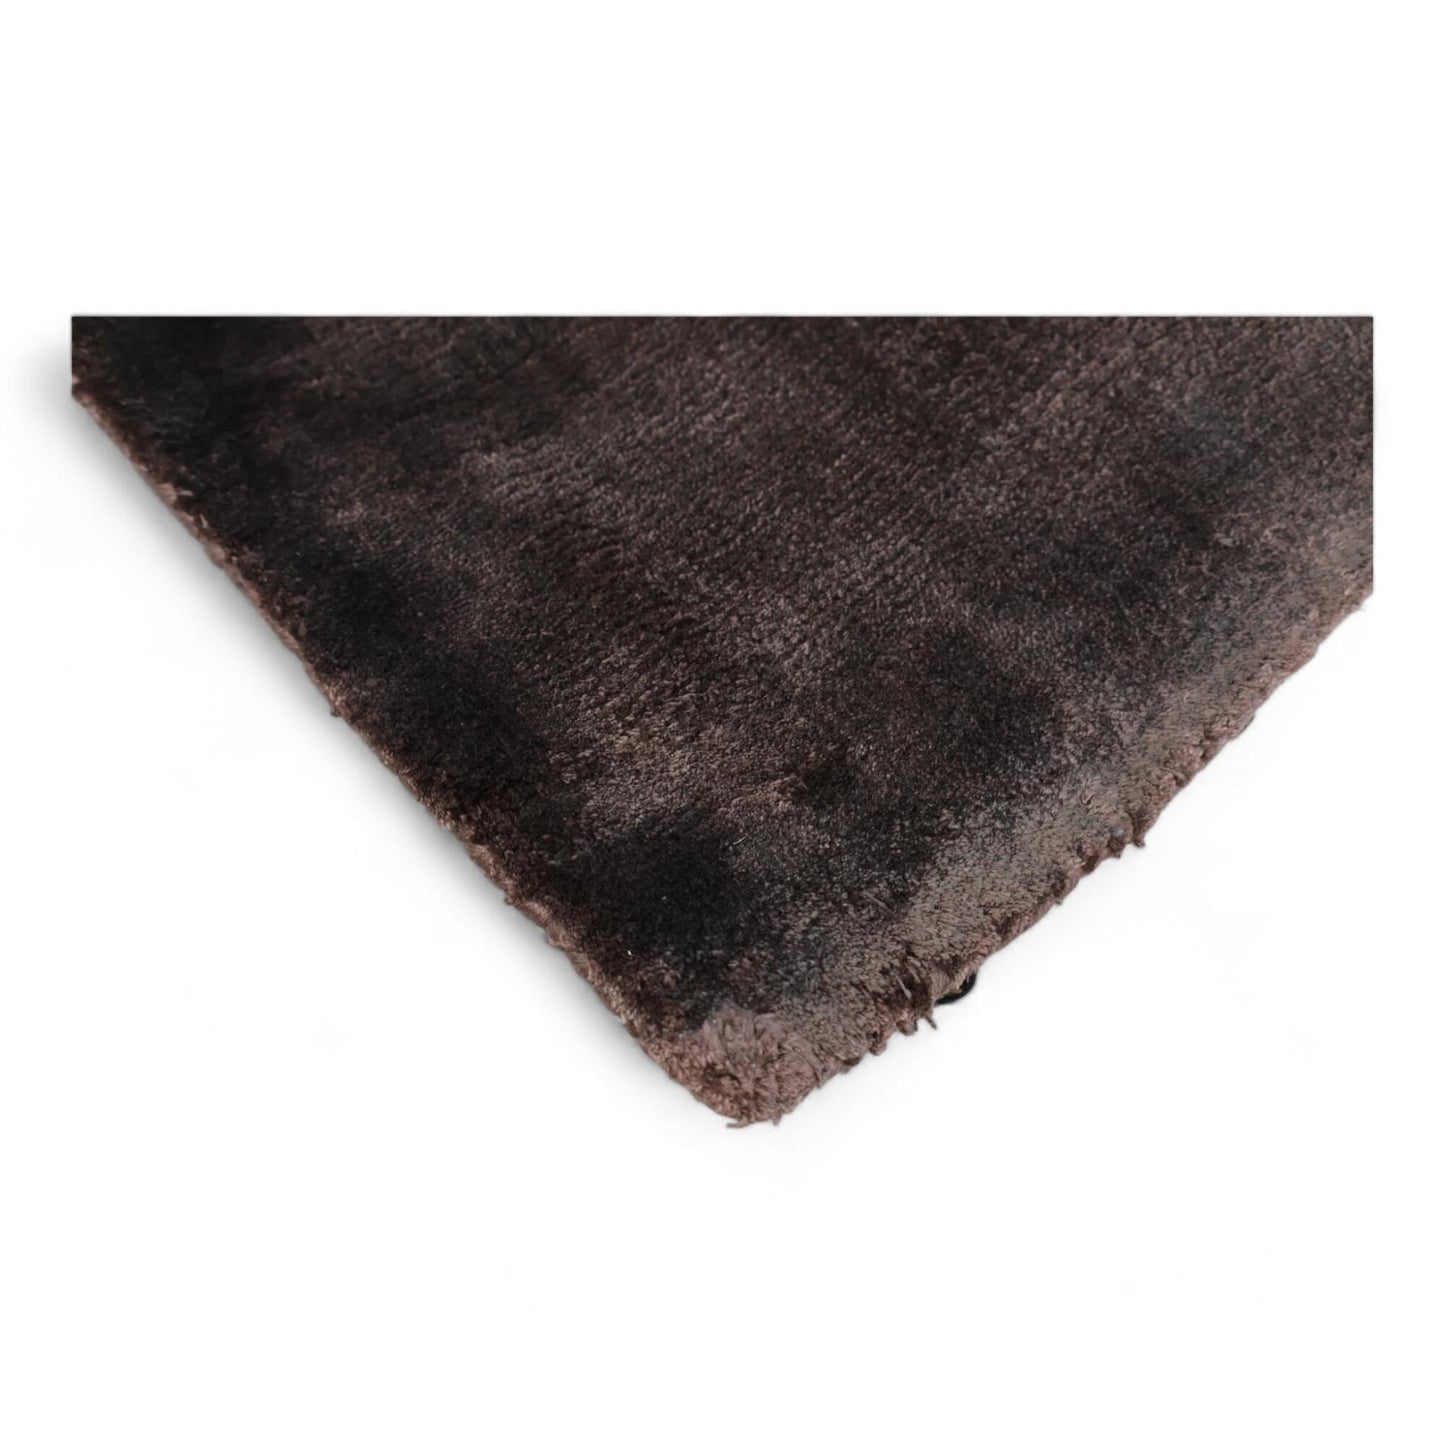 Helt nytt - mørk brun Sinclair gulvteppe, 200x300 cm